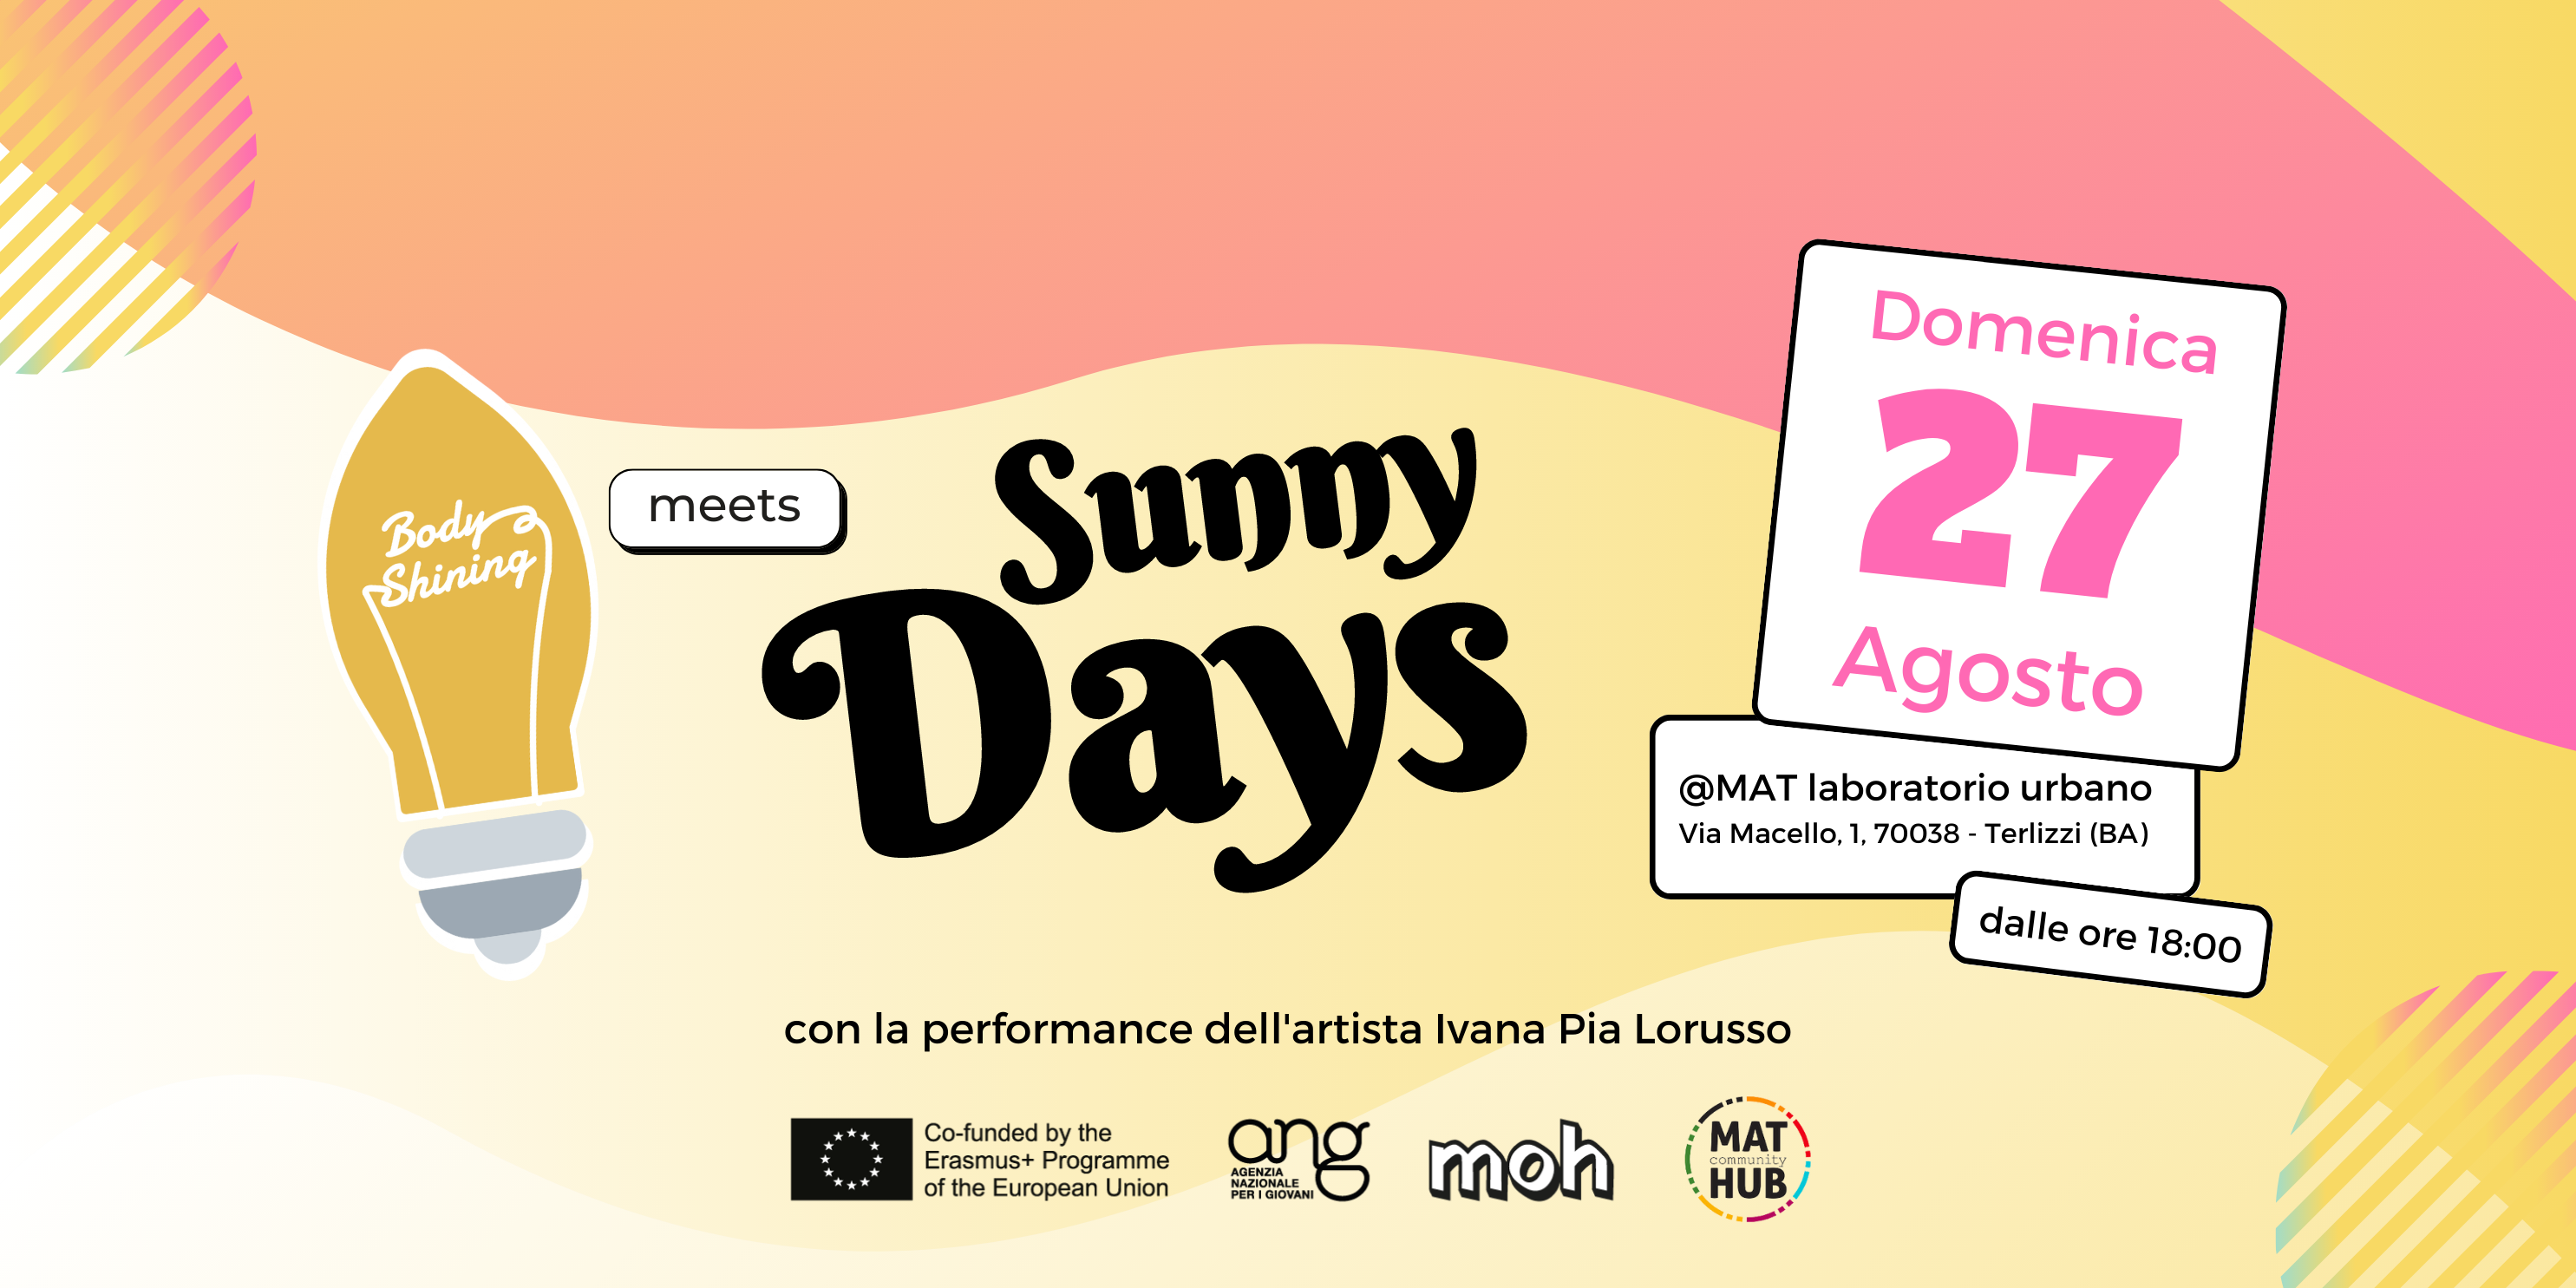 Al momento stai visualizzando Body Shining meets Sunny Days @MAT Terlizzi: evento finale del progetto | 27 agosto